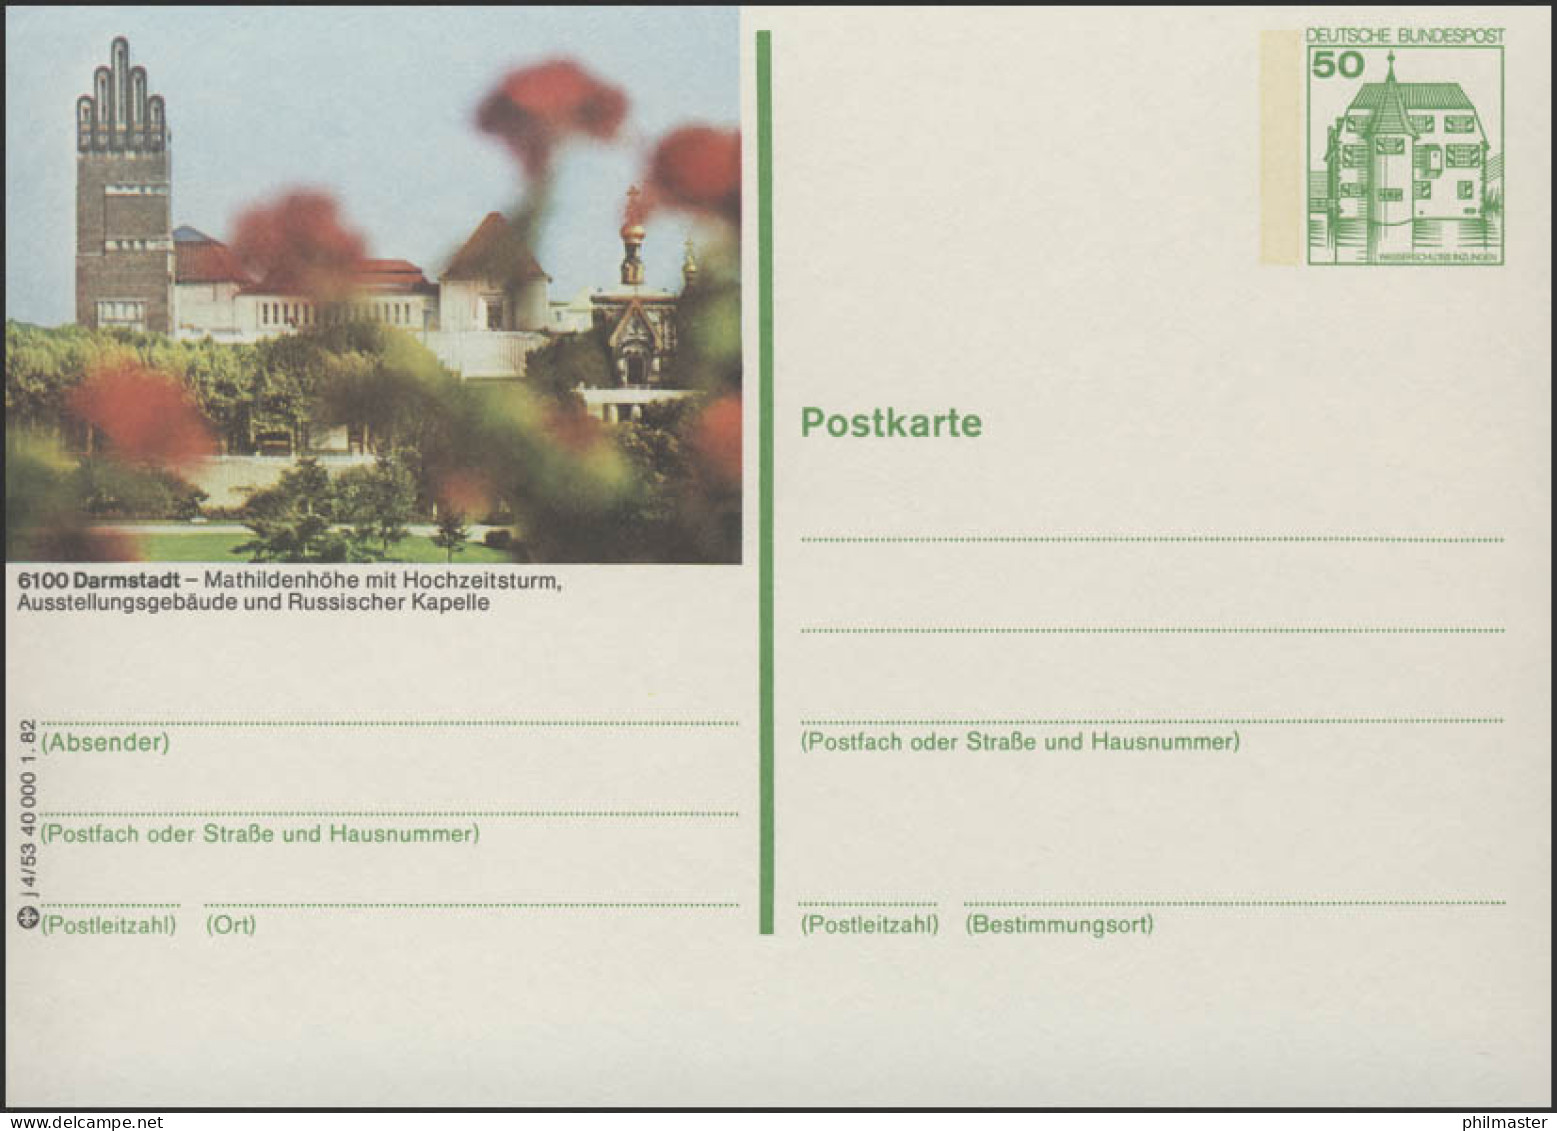 P134-j4/053 6100 Darmstadt - Mathildenhöhe ** - Illustrated Postcards - Mint